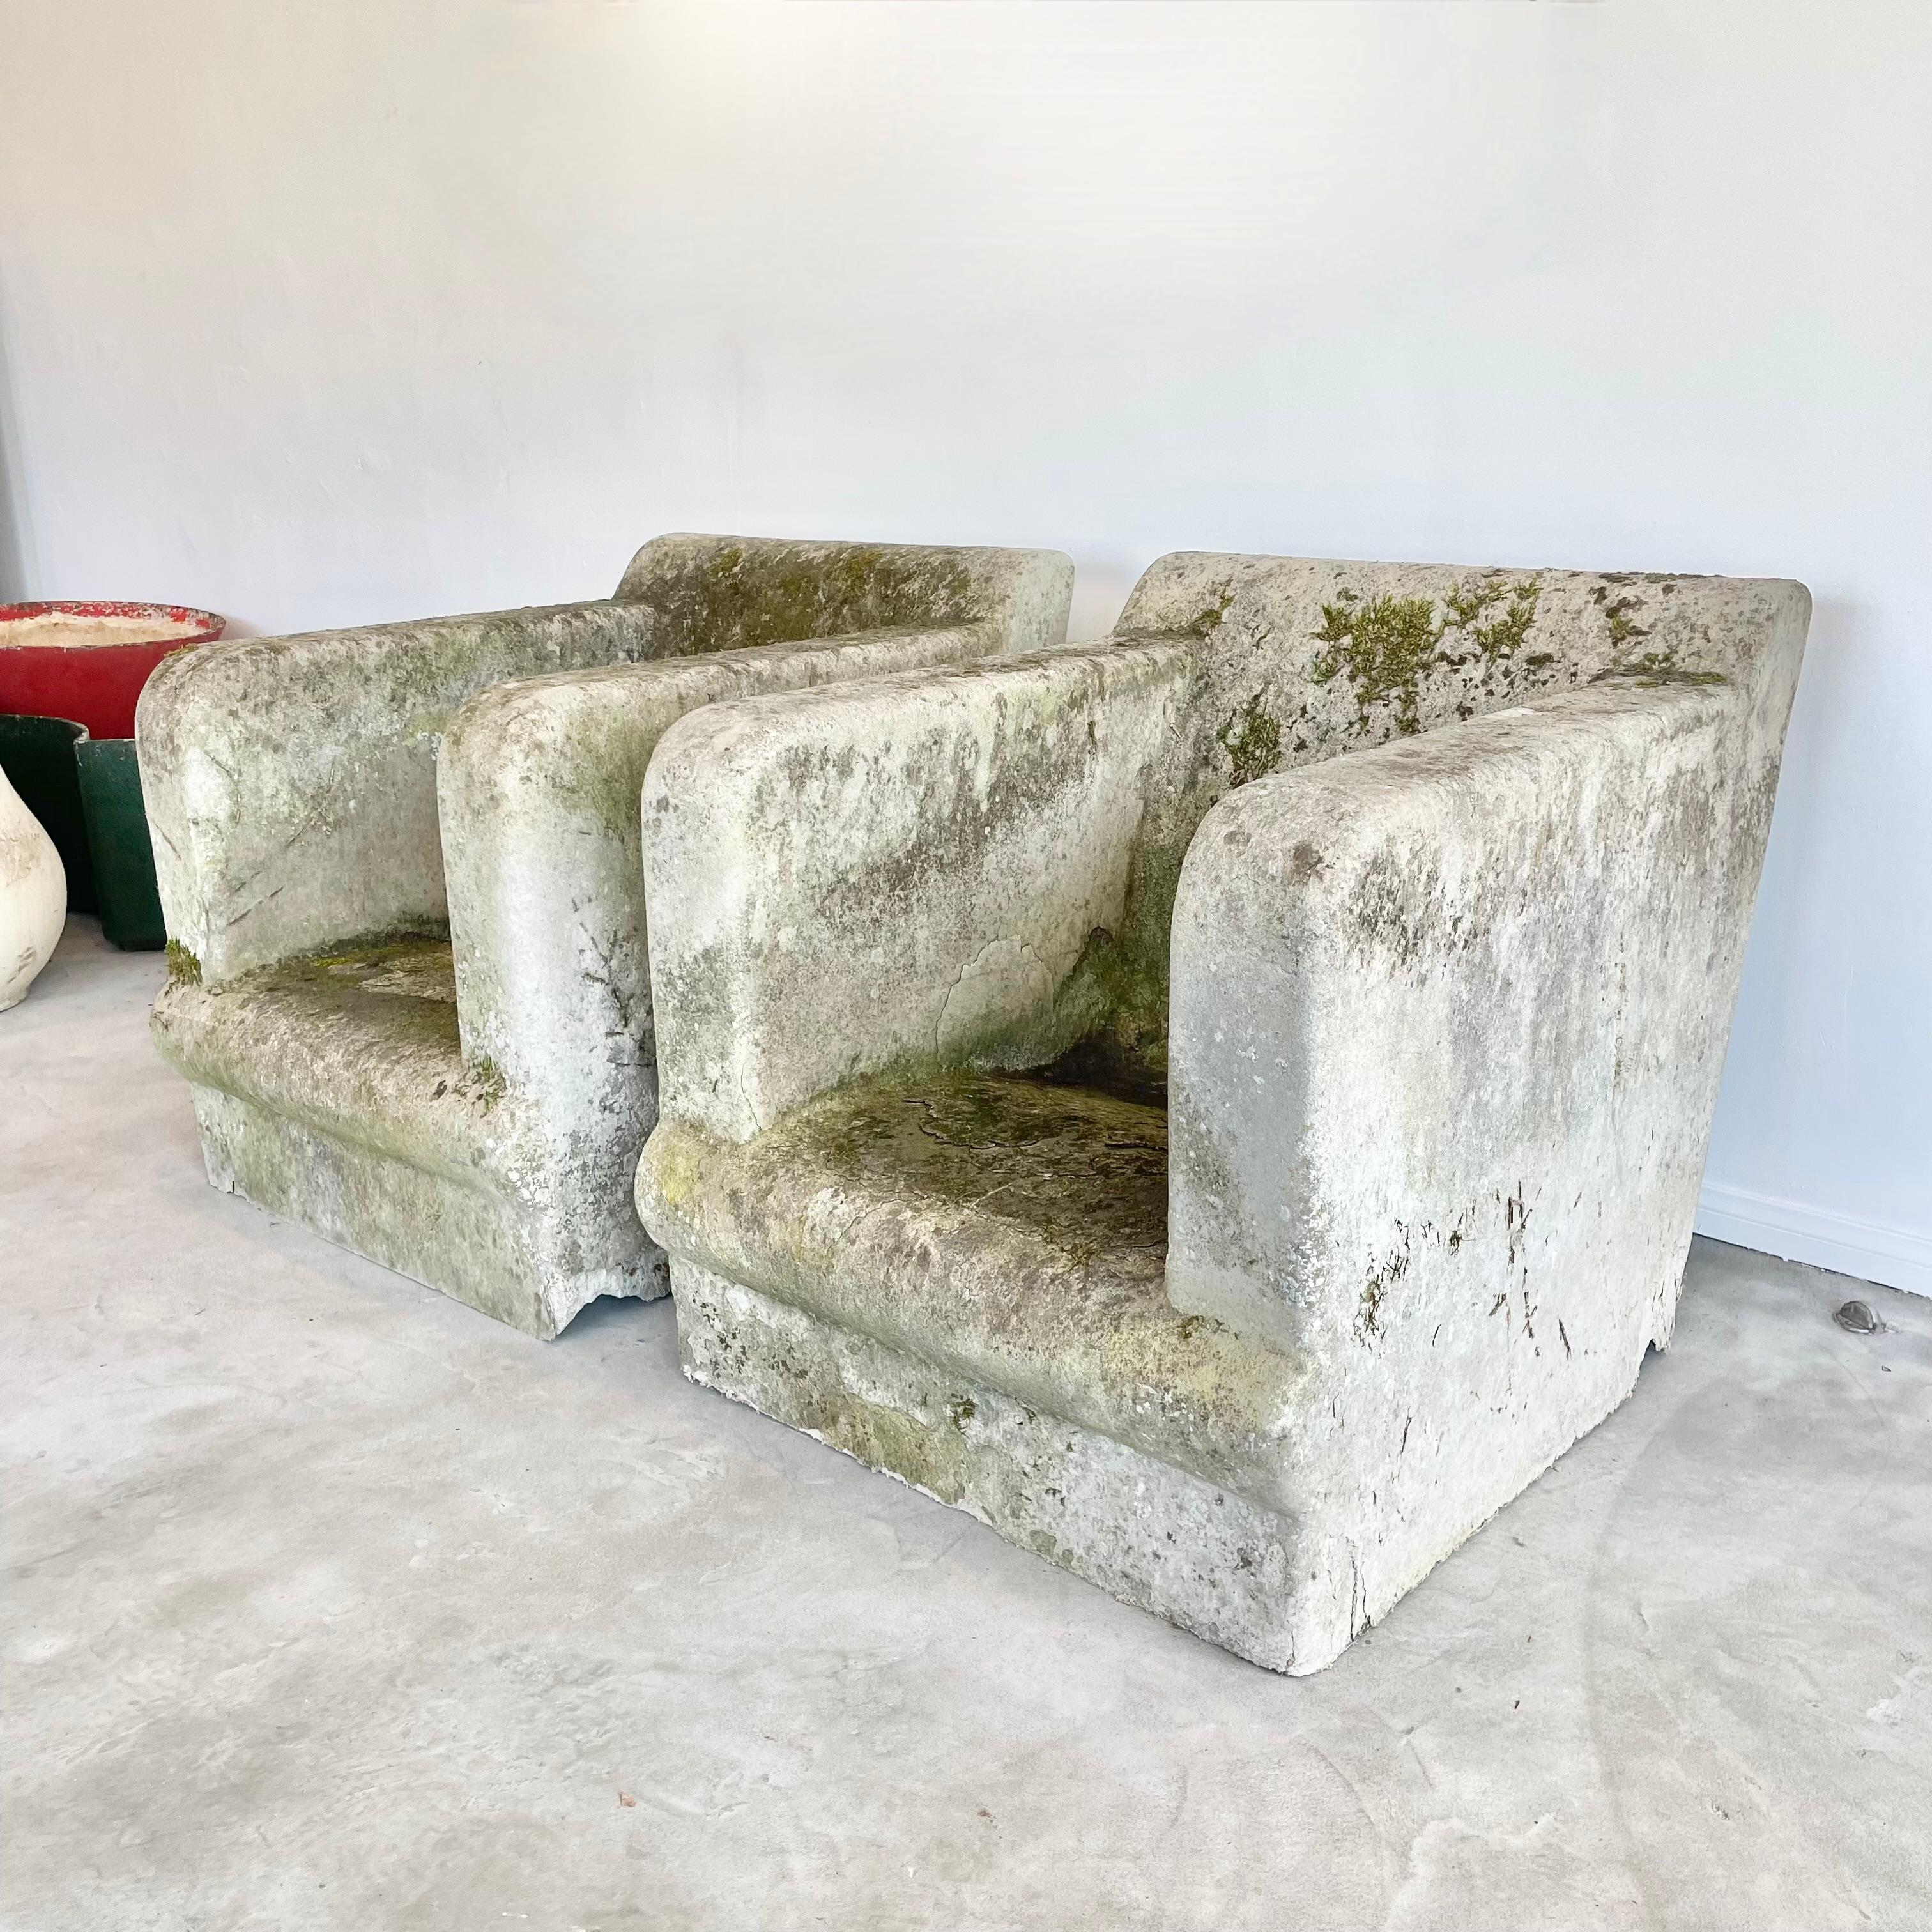 Atemberaubendes und äußerst seltenes Paar skulpturaler Stühle aus Beton für den Außenbereich. Handgefertigt in den 1940er Jahren in Belgien. Clubsessel mit Hohlkörper und perfekter Patina mit Ranken, Flechten und Moos. Unglaublich modernes Design